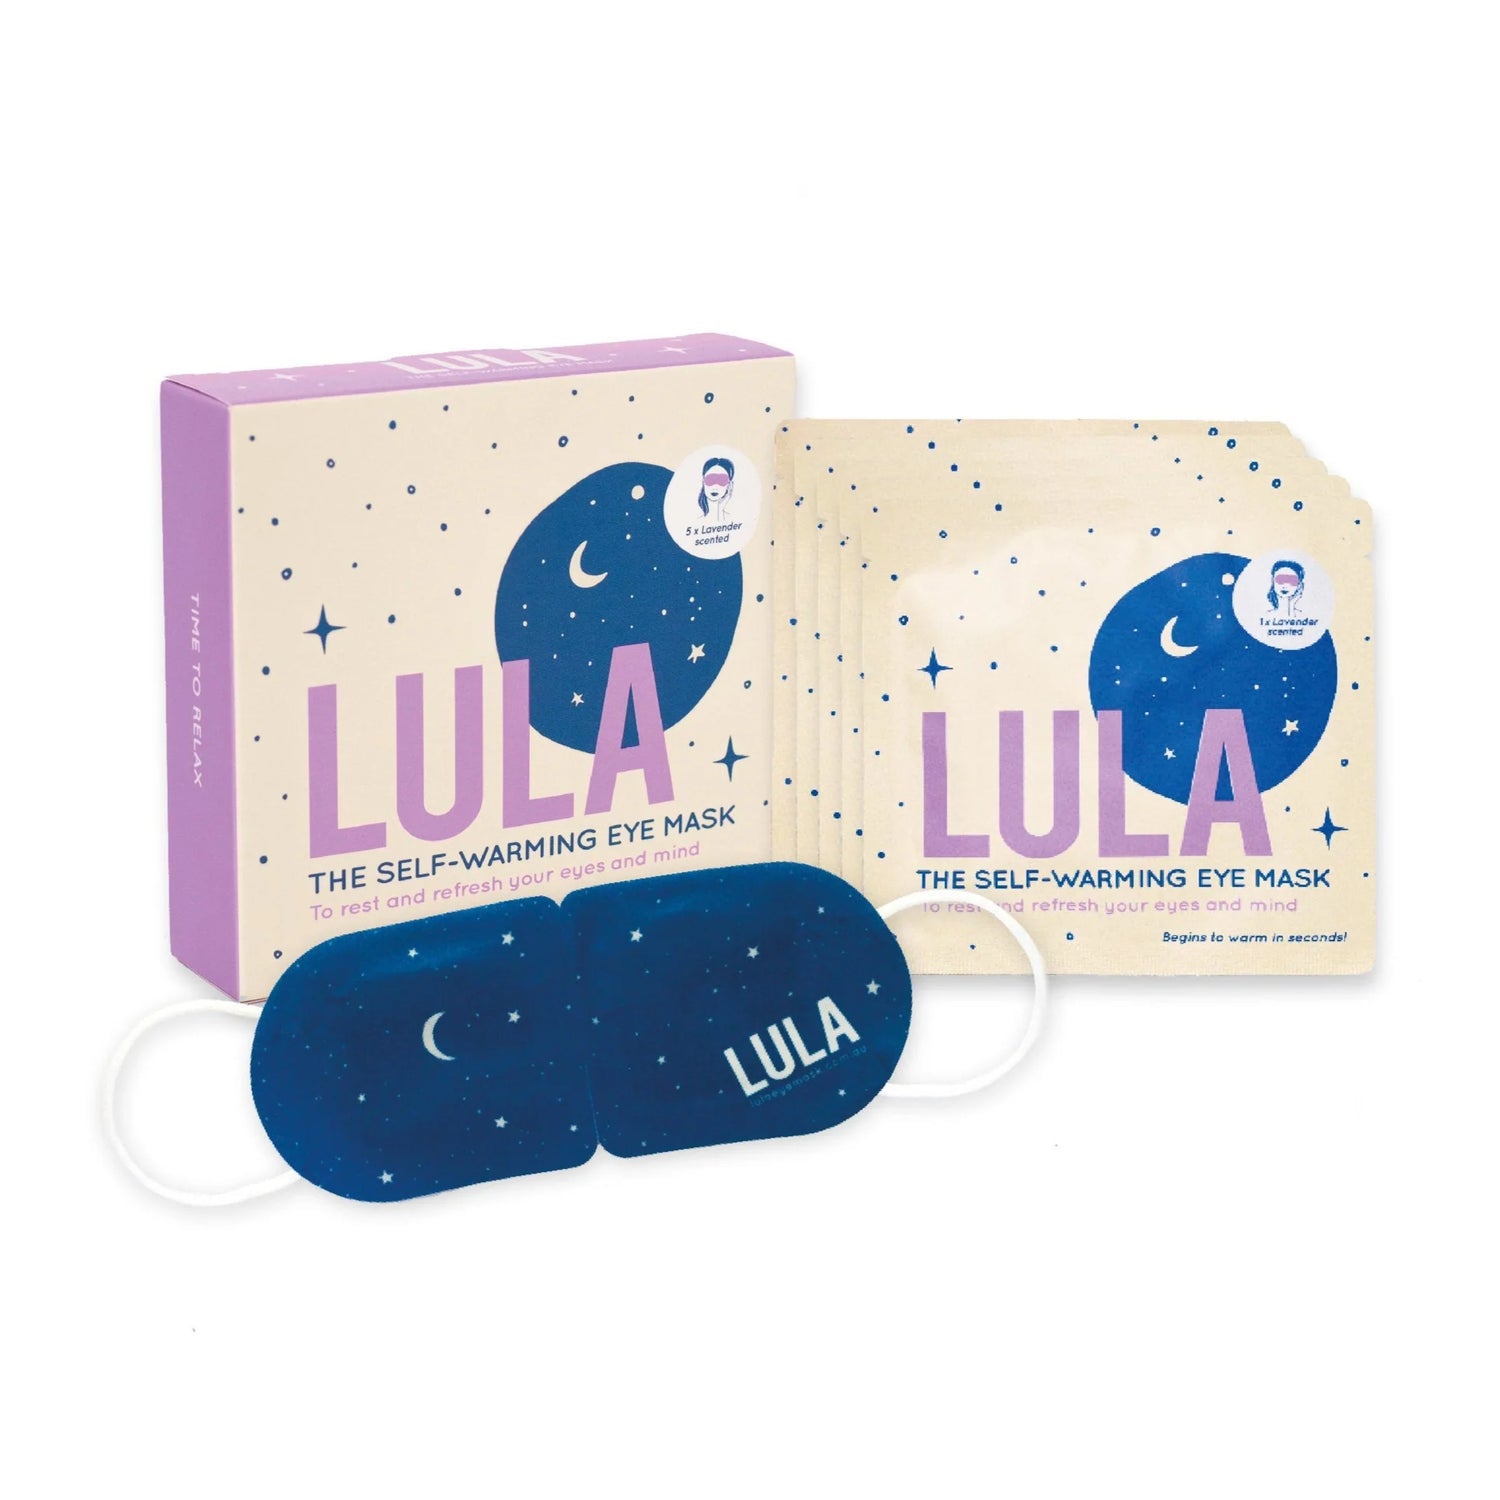 Lula Self-Warming Eye Mask - Lavender Scented (5 Pack)